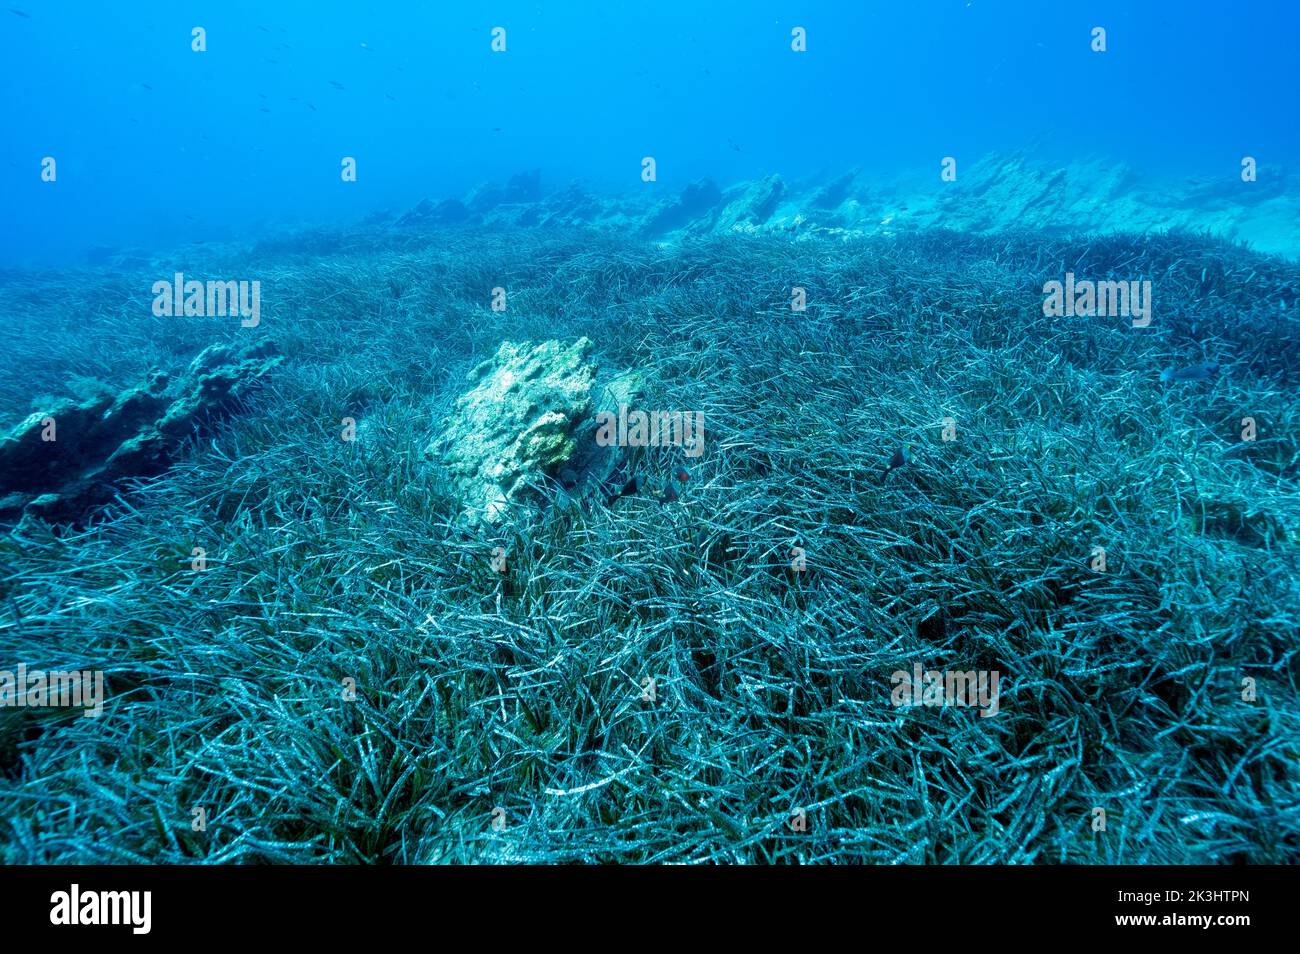 Lits de Neptuneseagrass, Posidonia oceanica, zone de protection marine de la baie de Gokova Turquie Banque D'Images